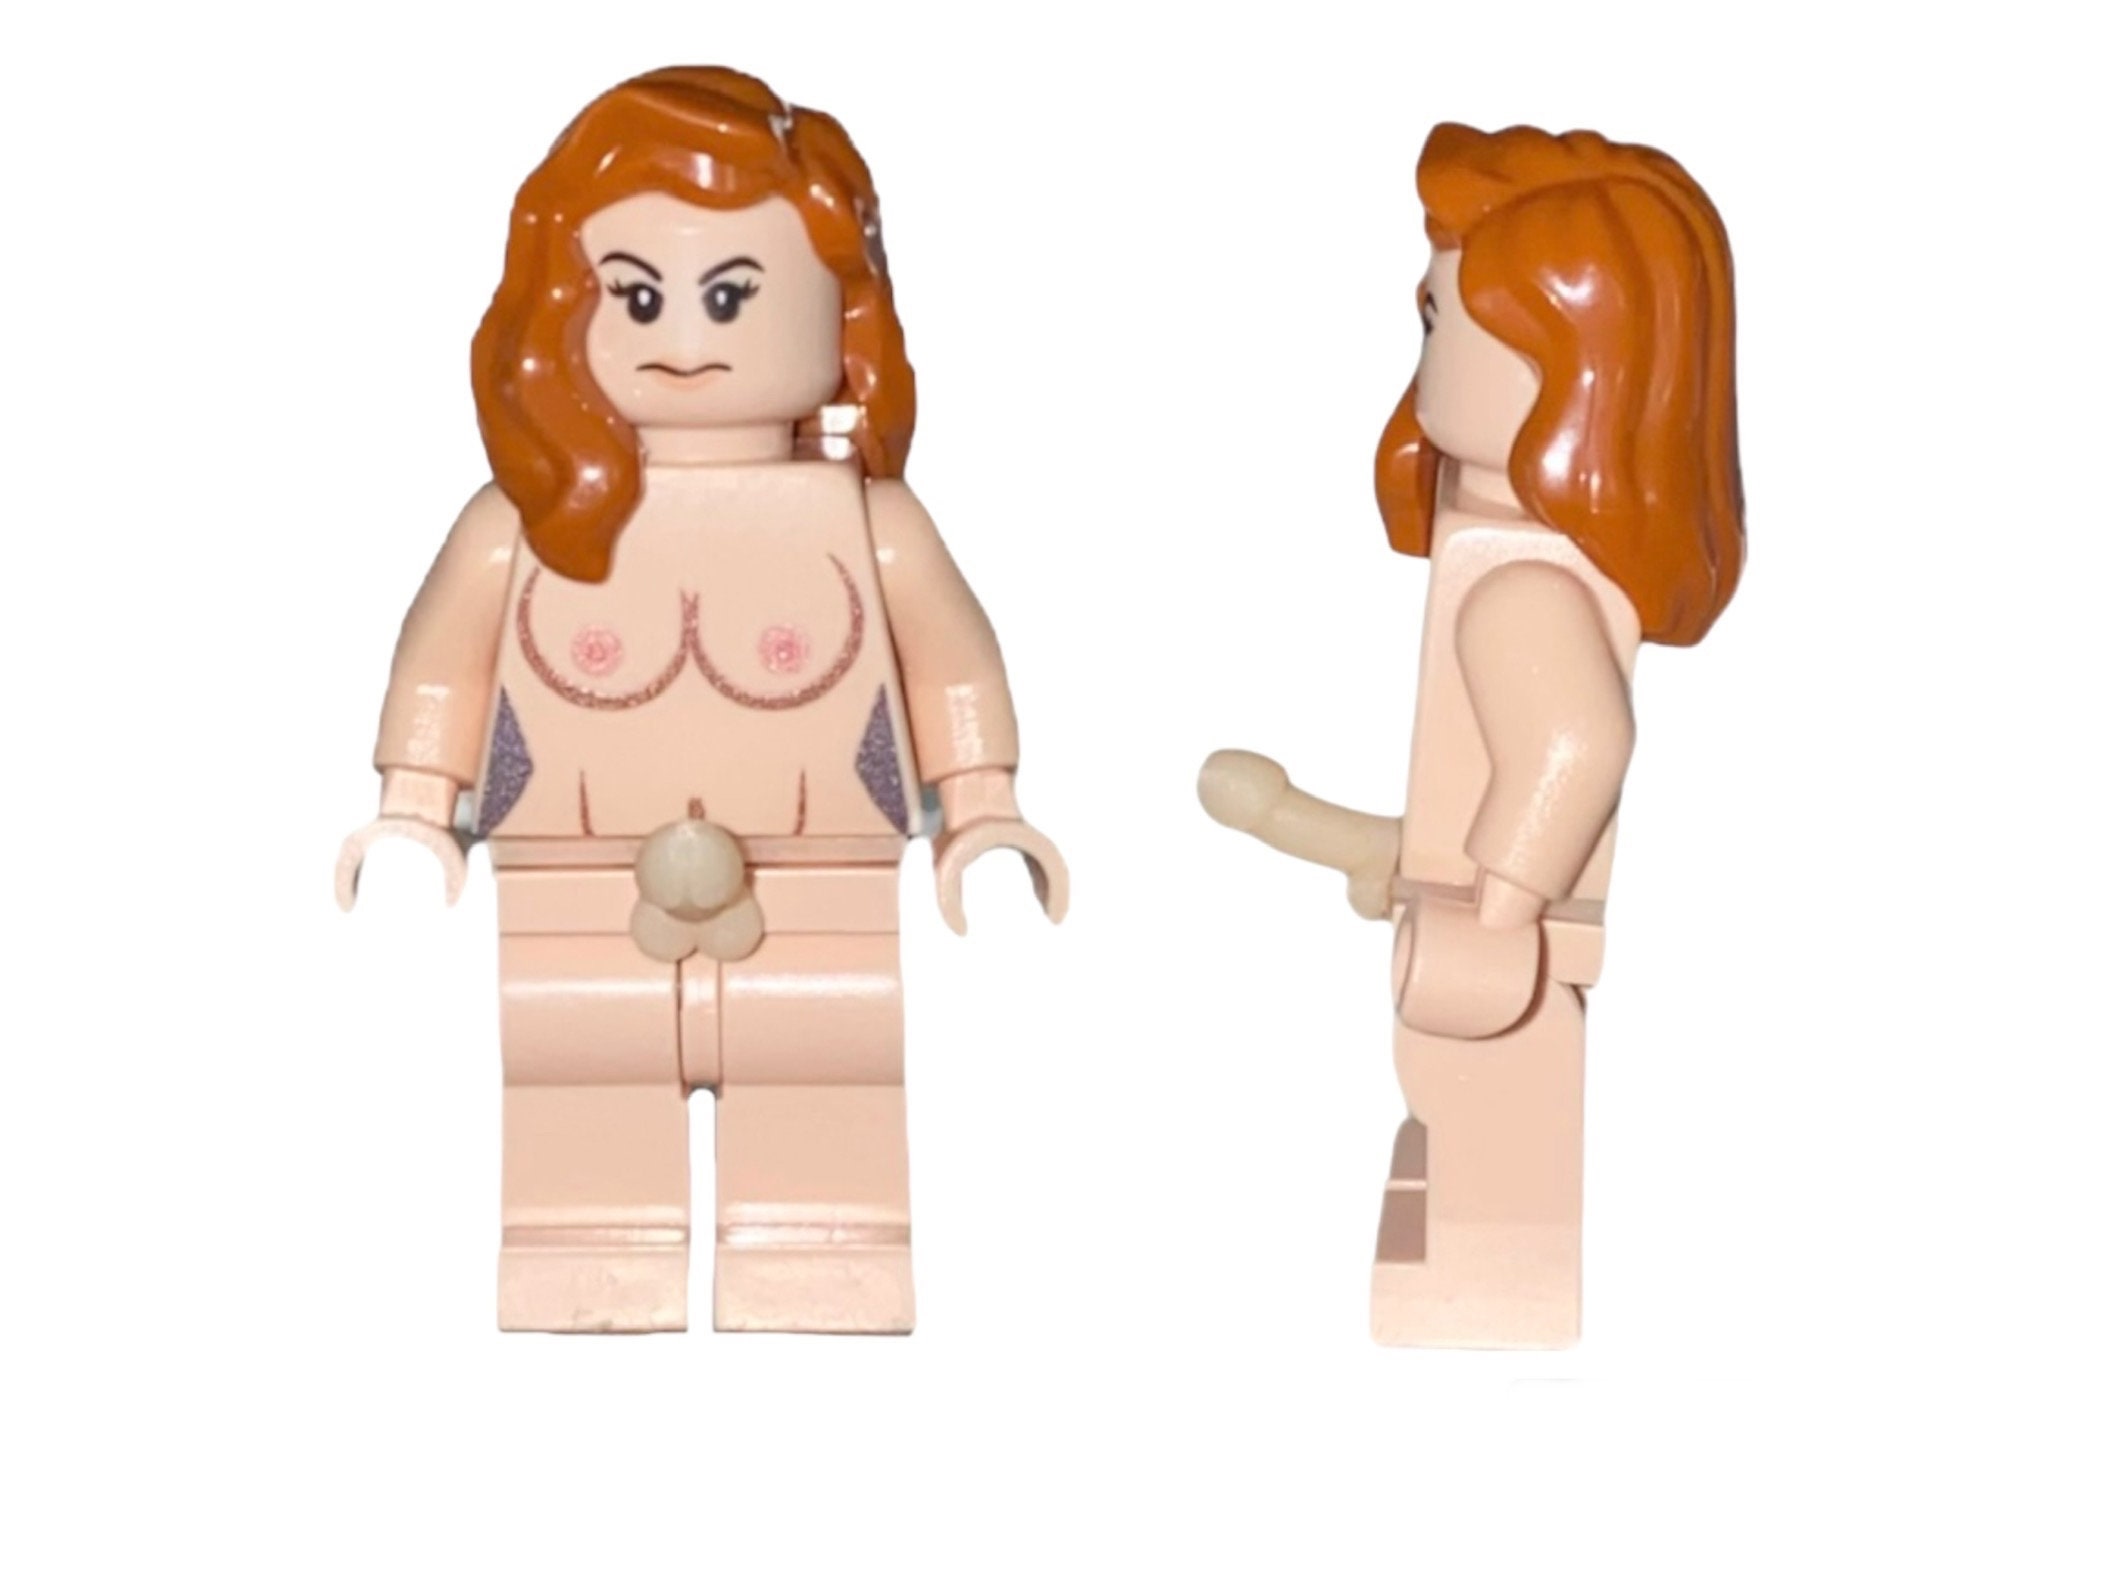 Naked lego people